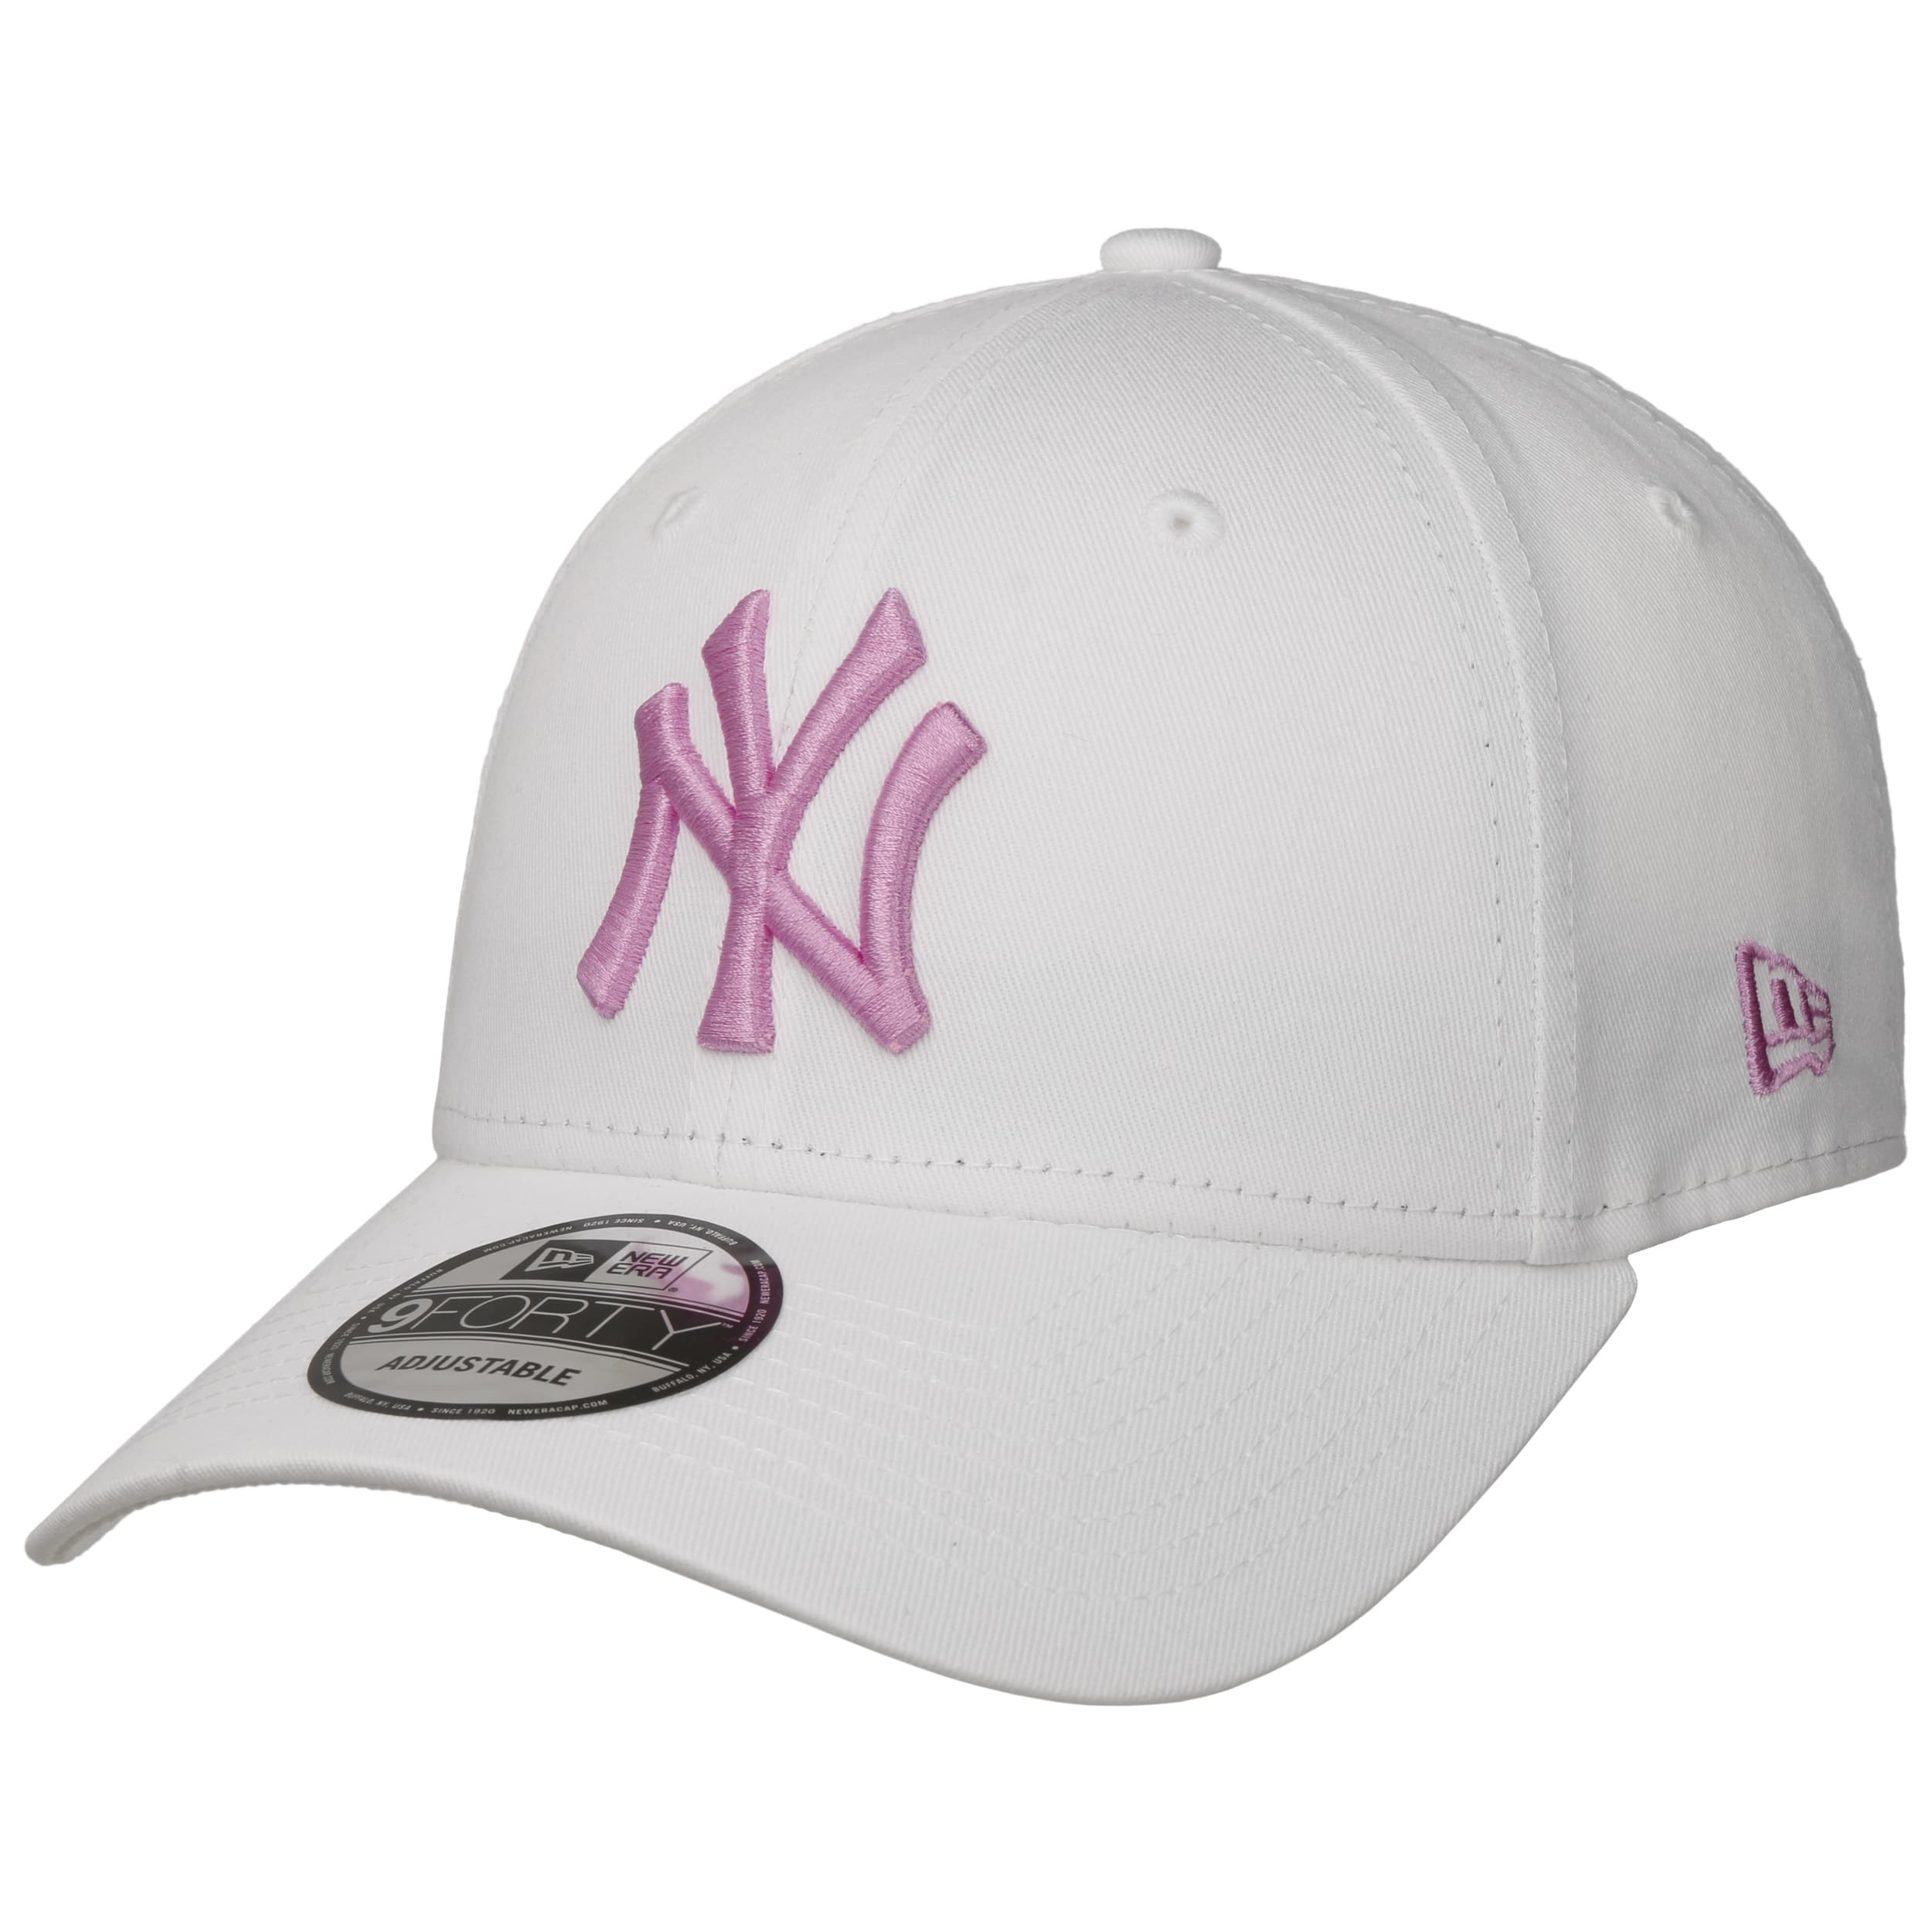 Pink NY Baseball Cap New York Hat NY Baseball Hat 